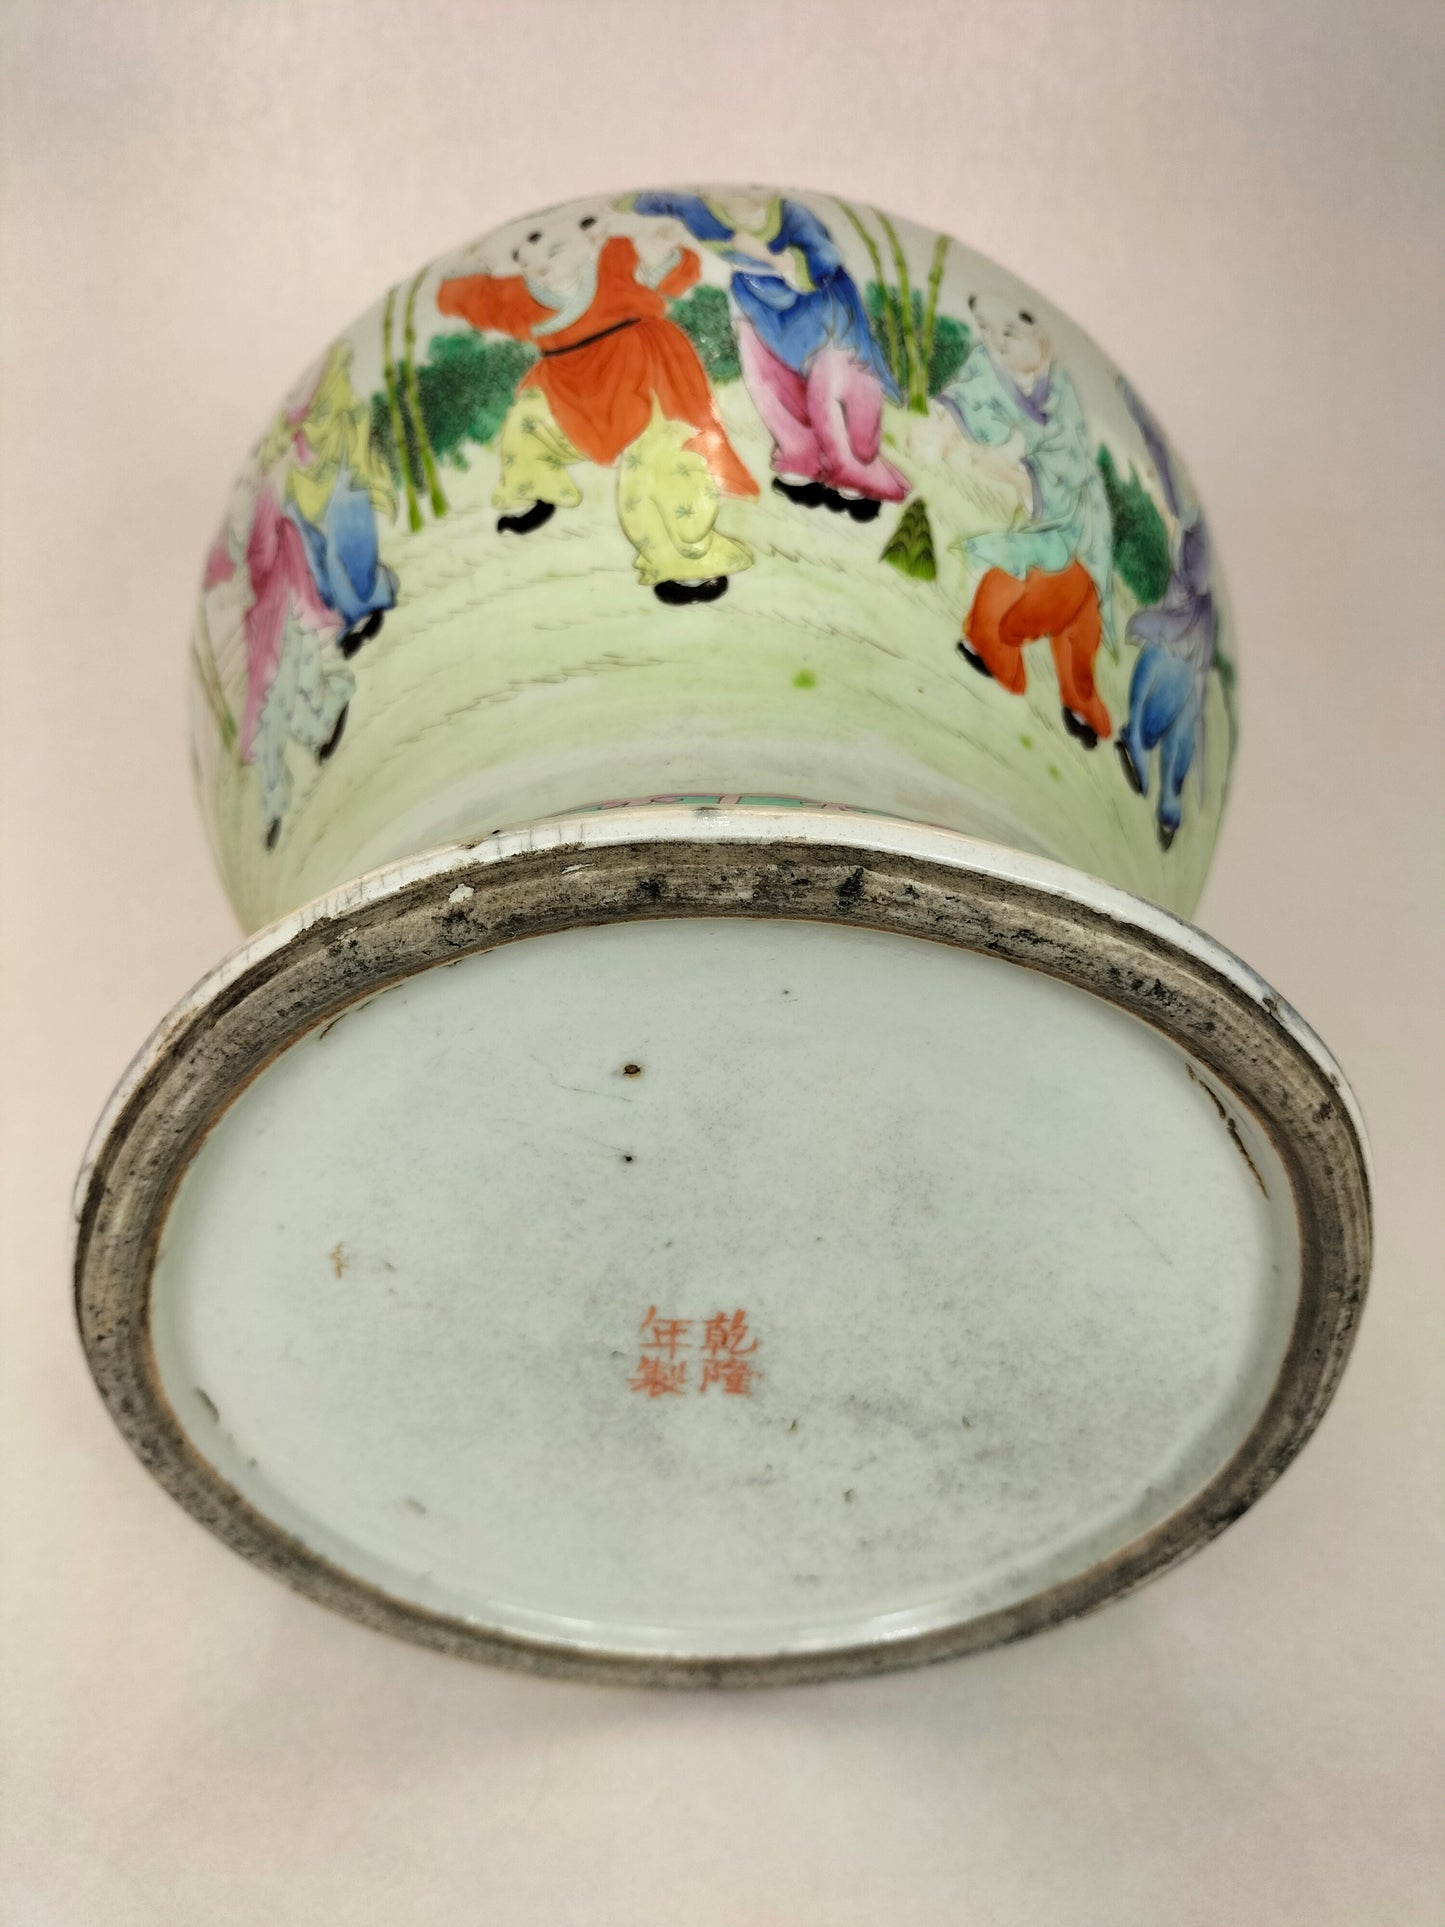 Bình hoa hồng cổ quý hiếm của Trung Quốc có nắp đậy "chàng trai hạnh phúc" // Dấu ấn Càn Long - Nhà Thanh - thế kỷ 19